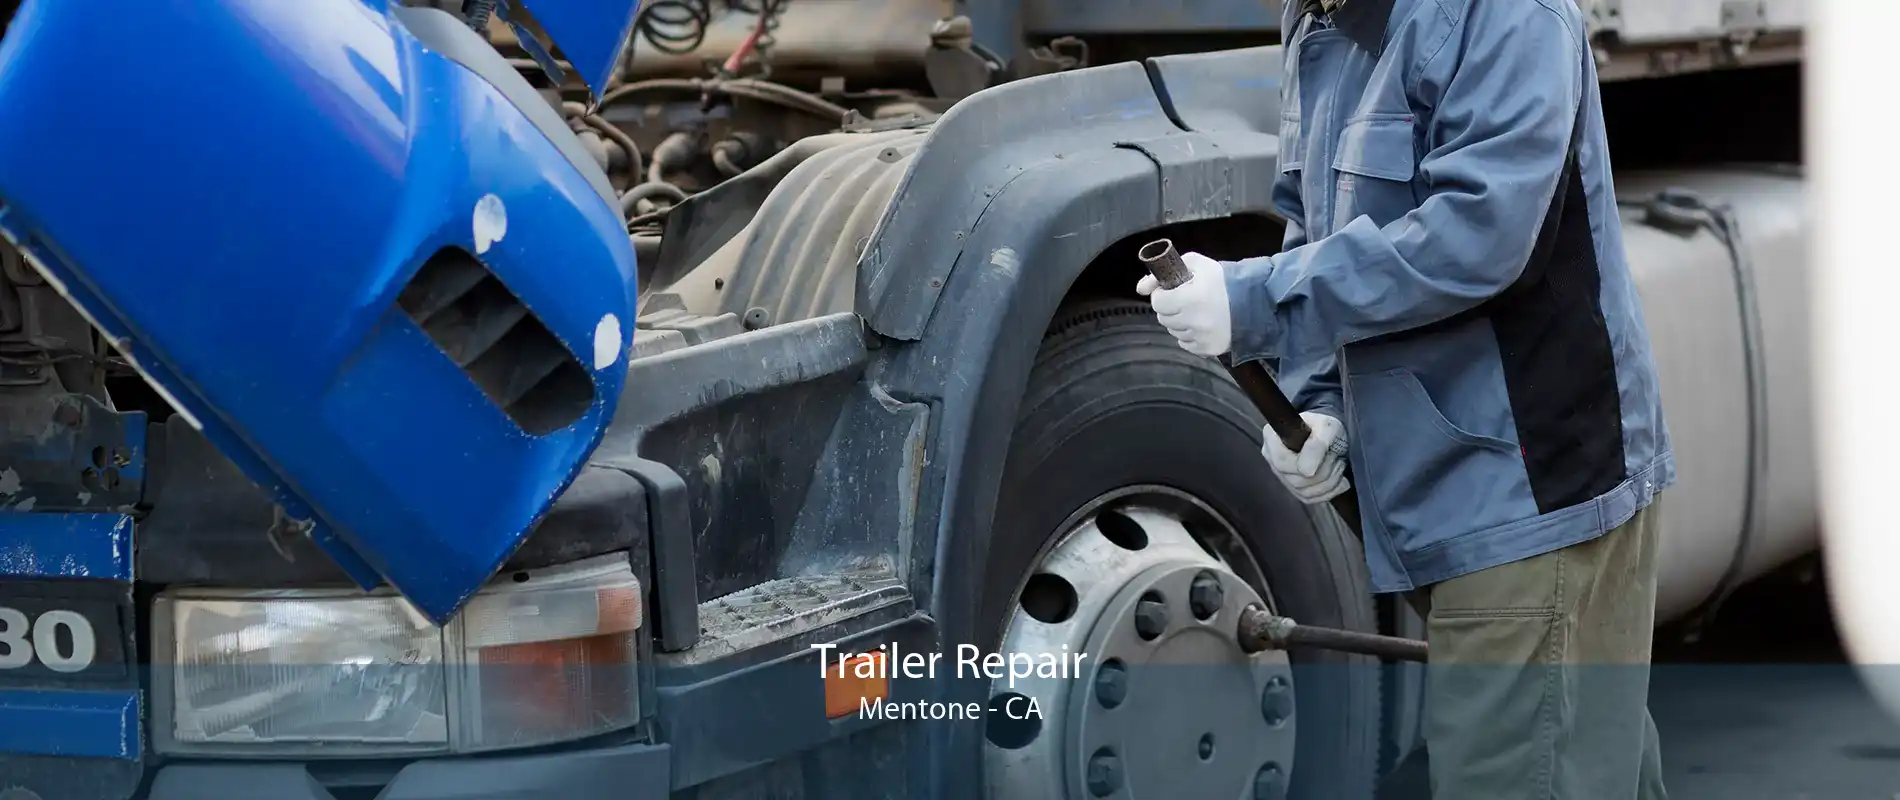 Trailer Repair Mentone - CA